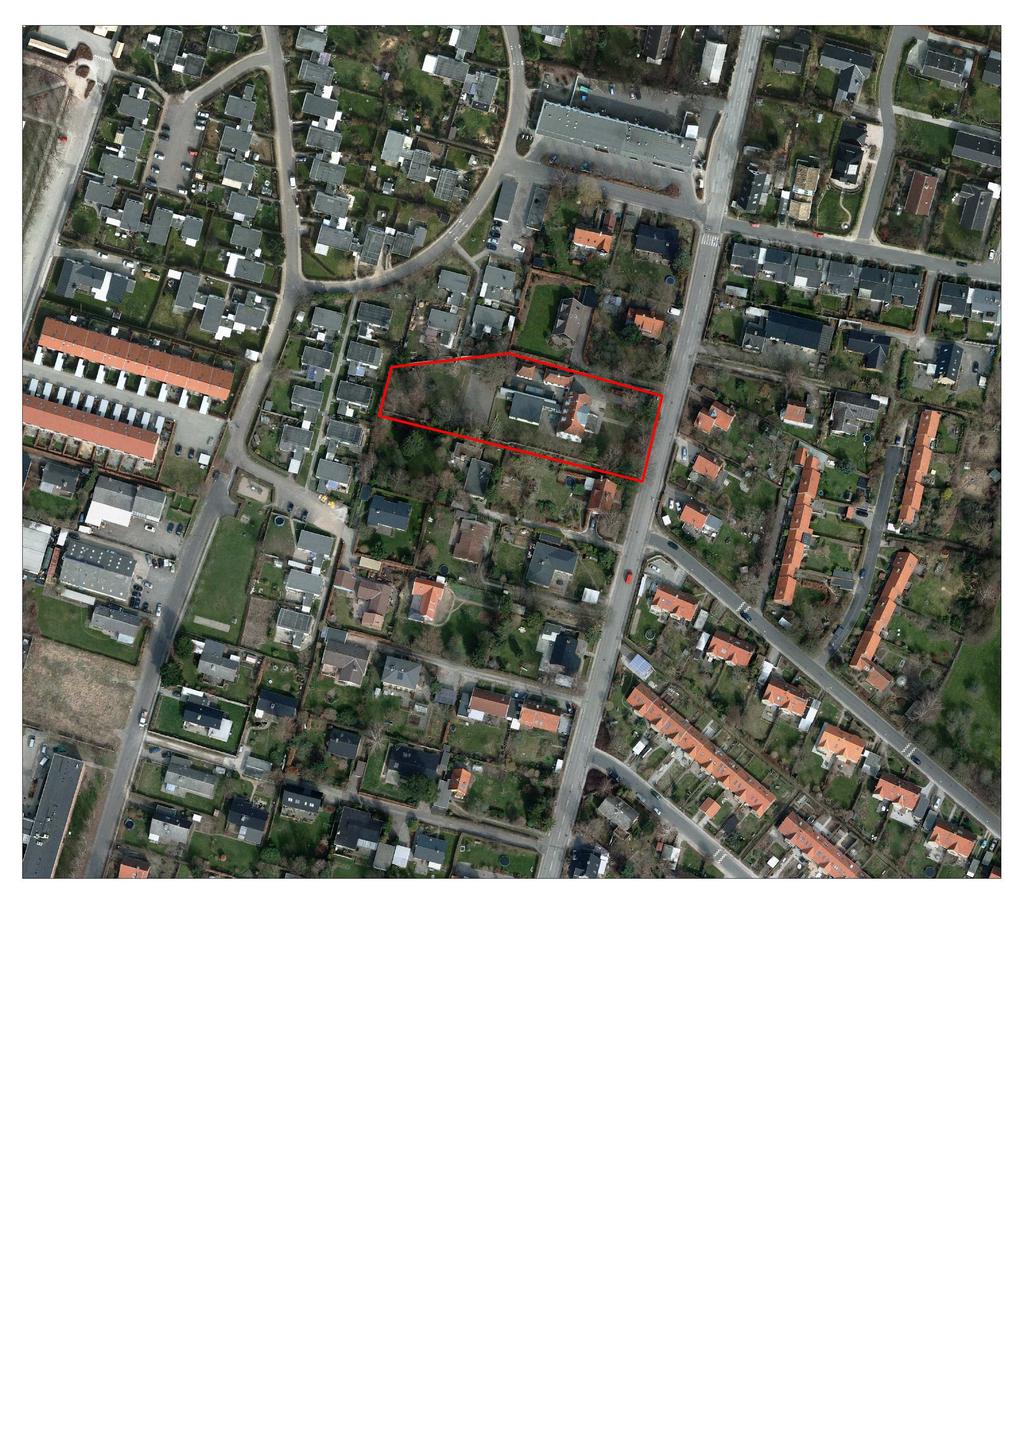 Redegørelse Indledning og baggrund Rudersdal Kommune har besluttet, at ejendommen Bakkevej 23 i Birkerød, der hidtil har været benyttet til skolefritidshjem for Kajerødskolen, fremover skal anvendes